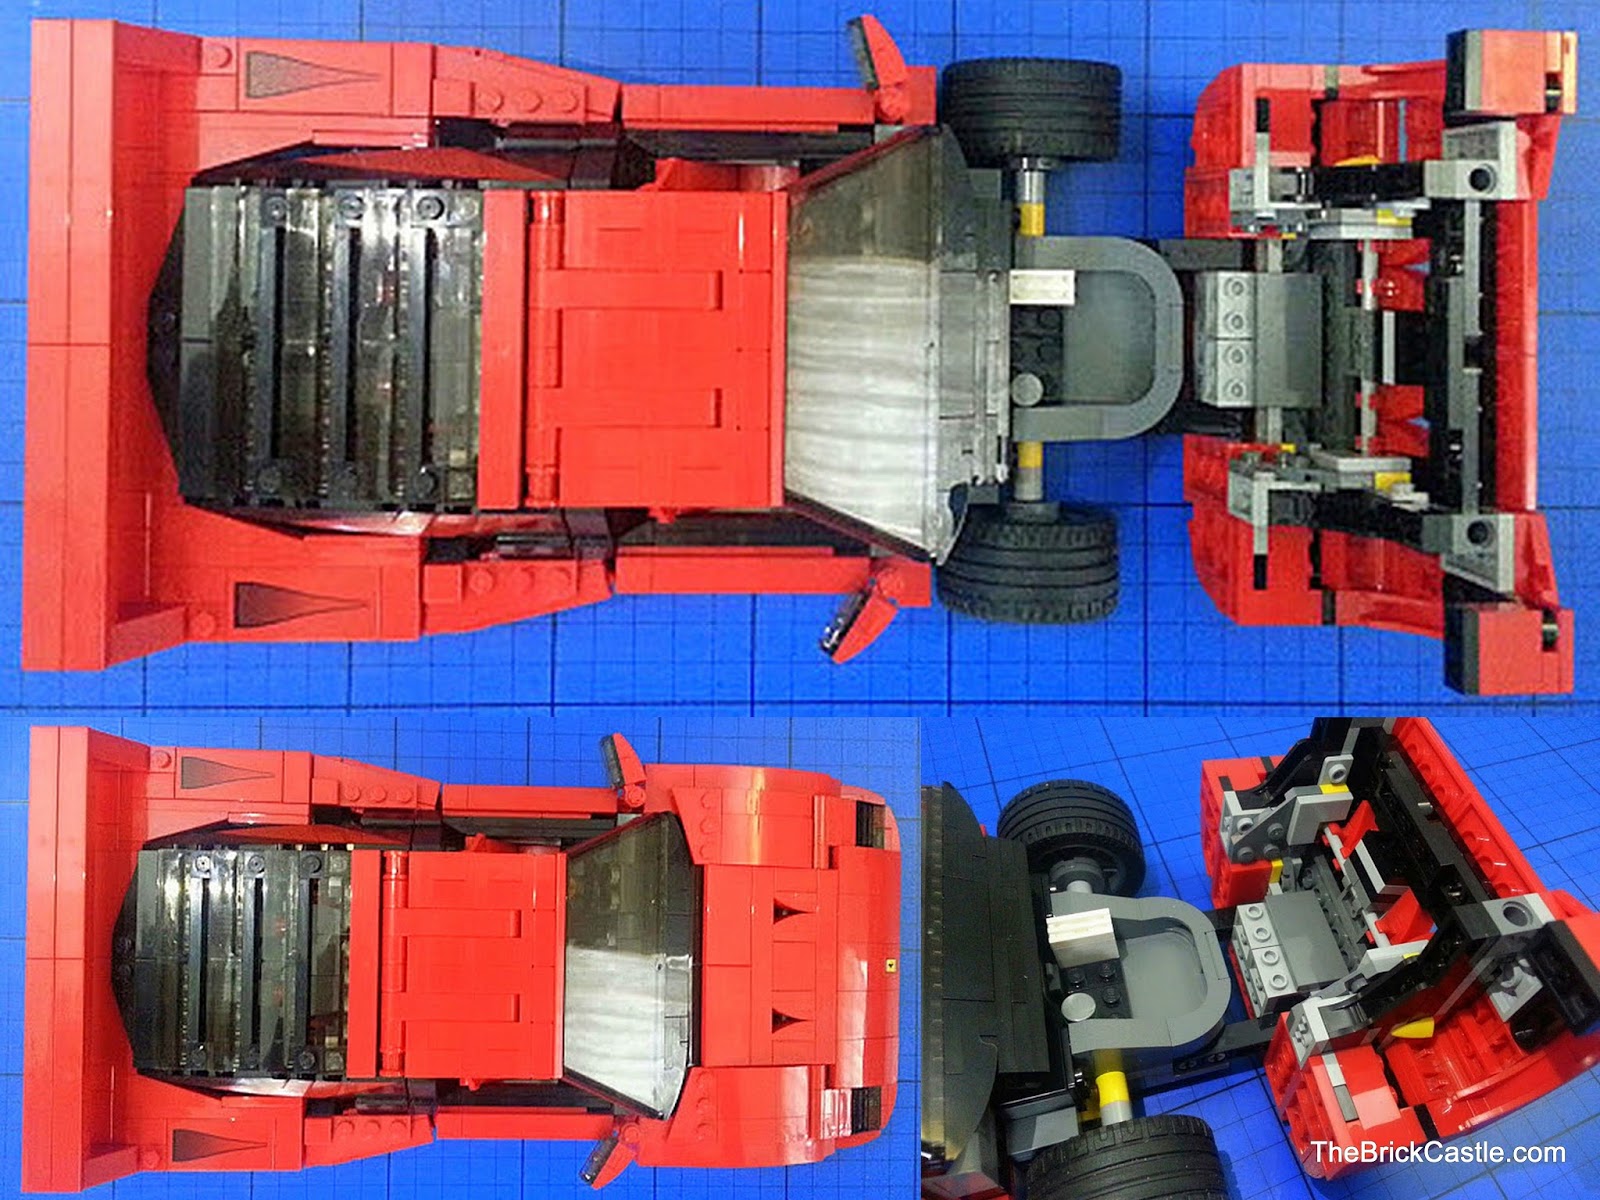 The Brick Castle: LEGO Ferrari F40 10248 review